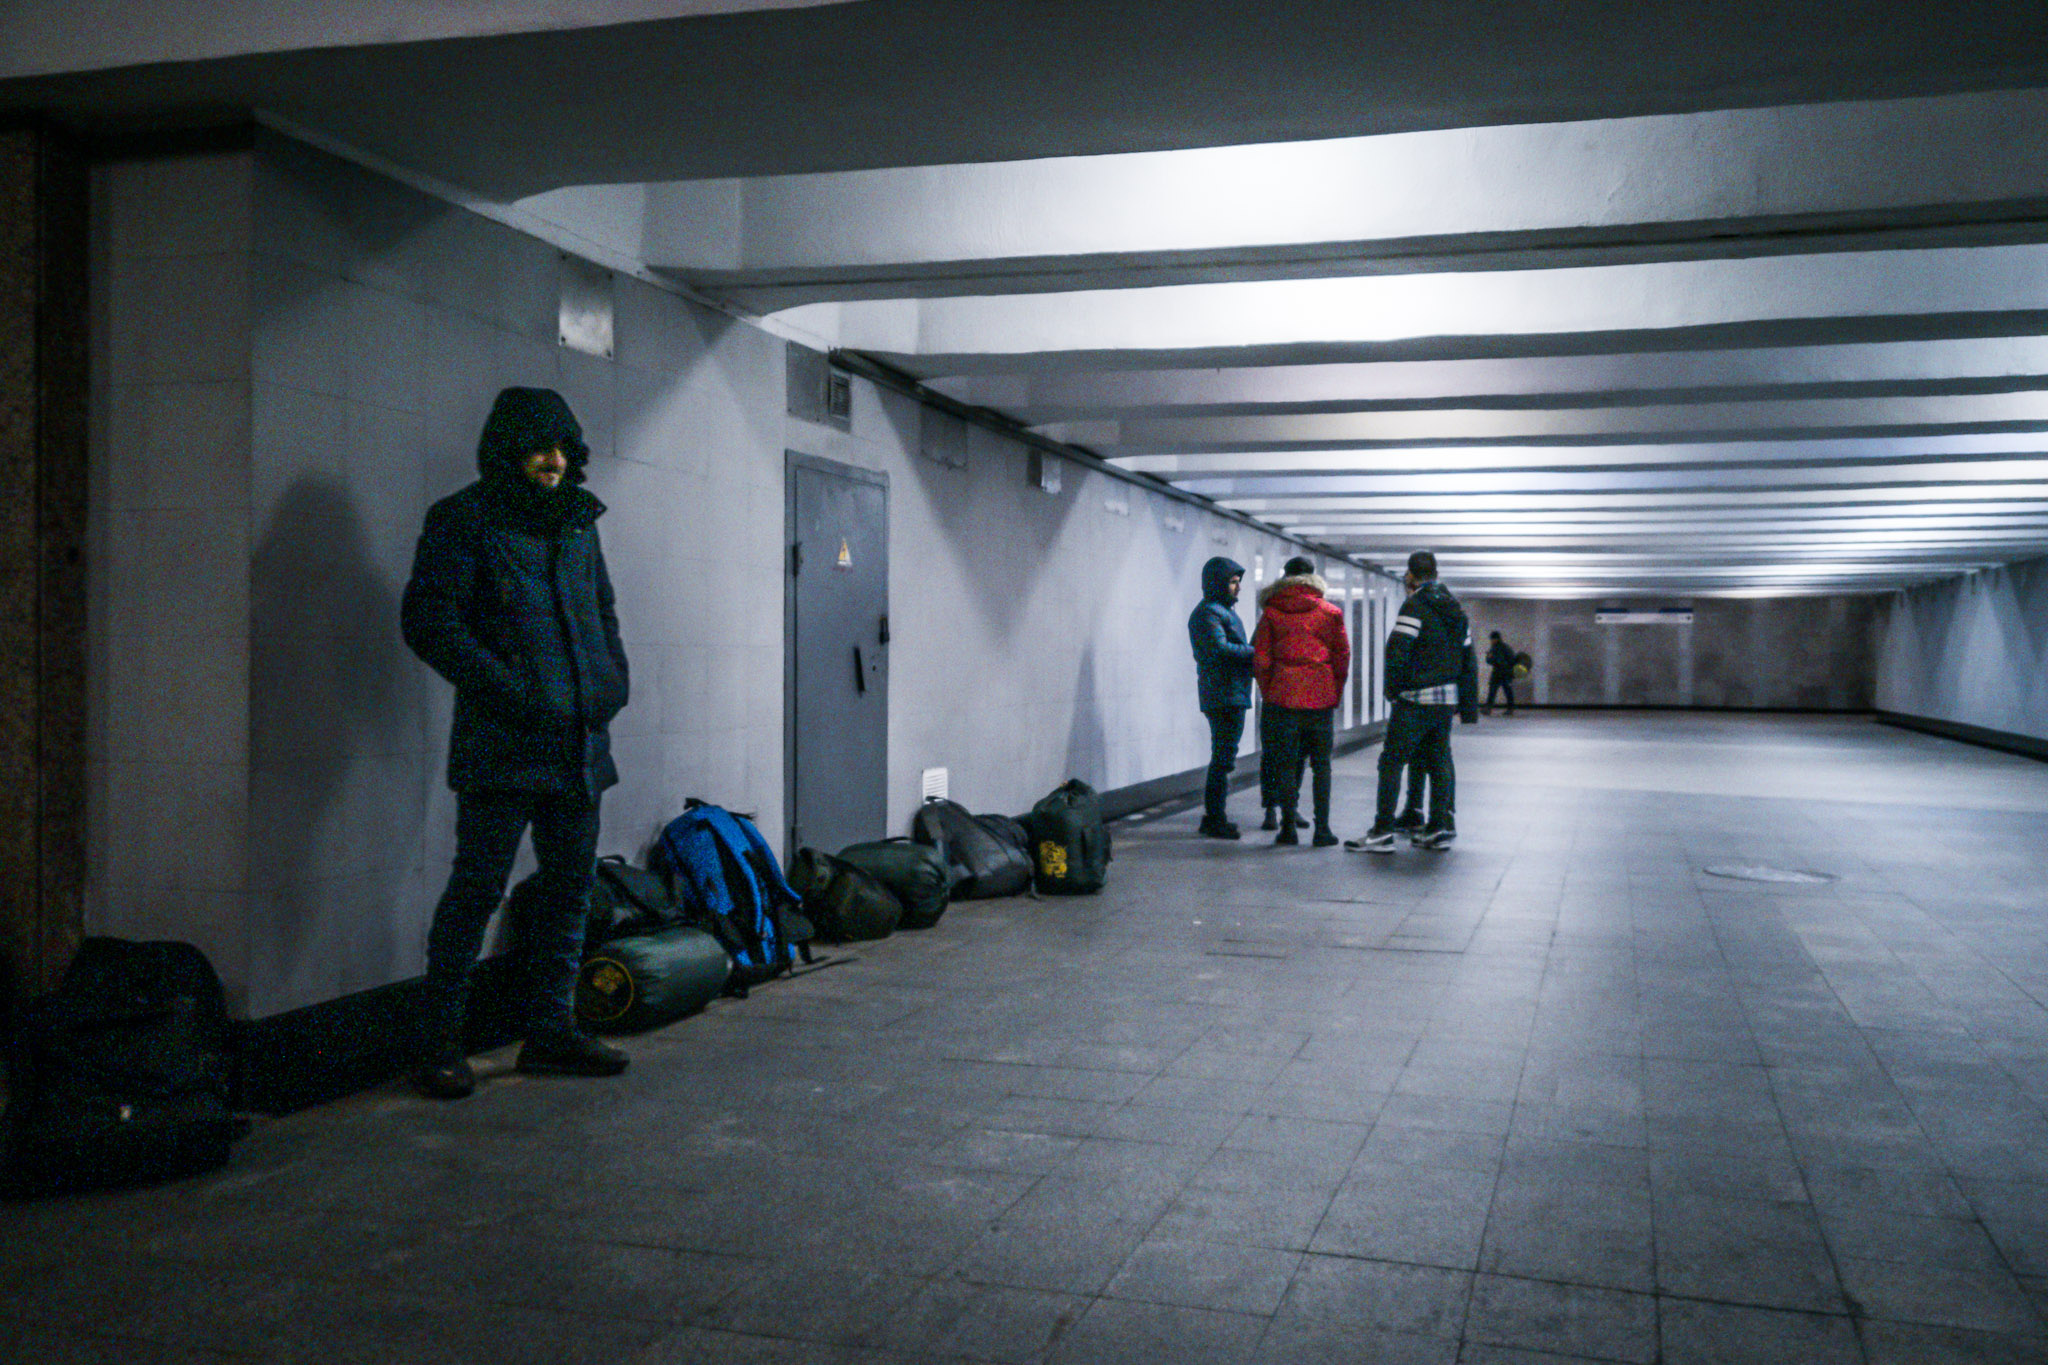 PaulDza-Minsk, novembre 2021 / Dans le centre de la ville, des migrants kurdes venus d'Irak passent la nuit dans un passage souterrain. La température est de -4°